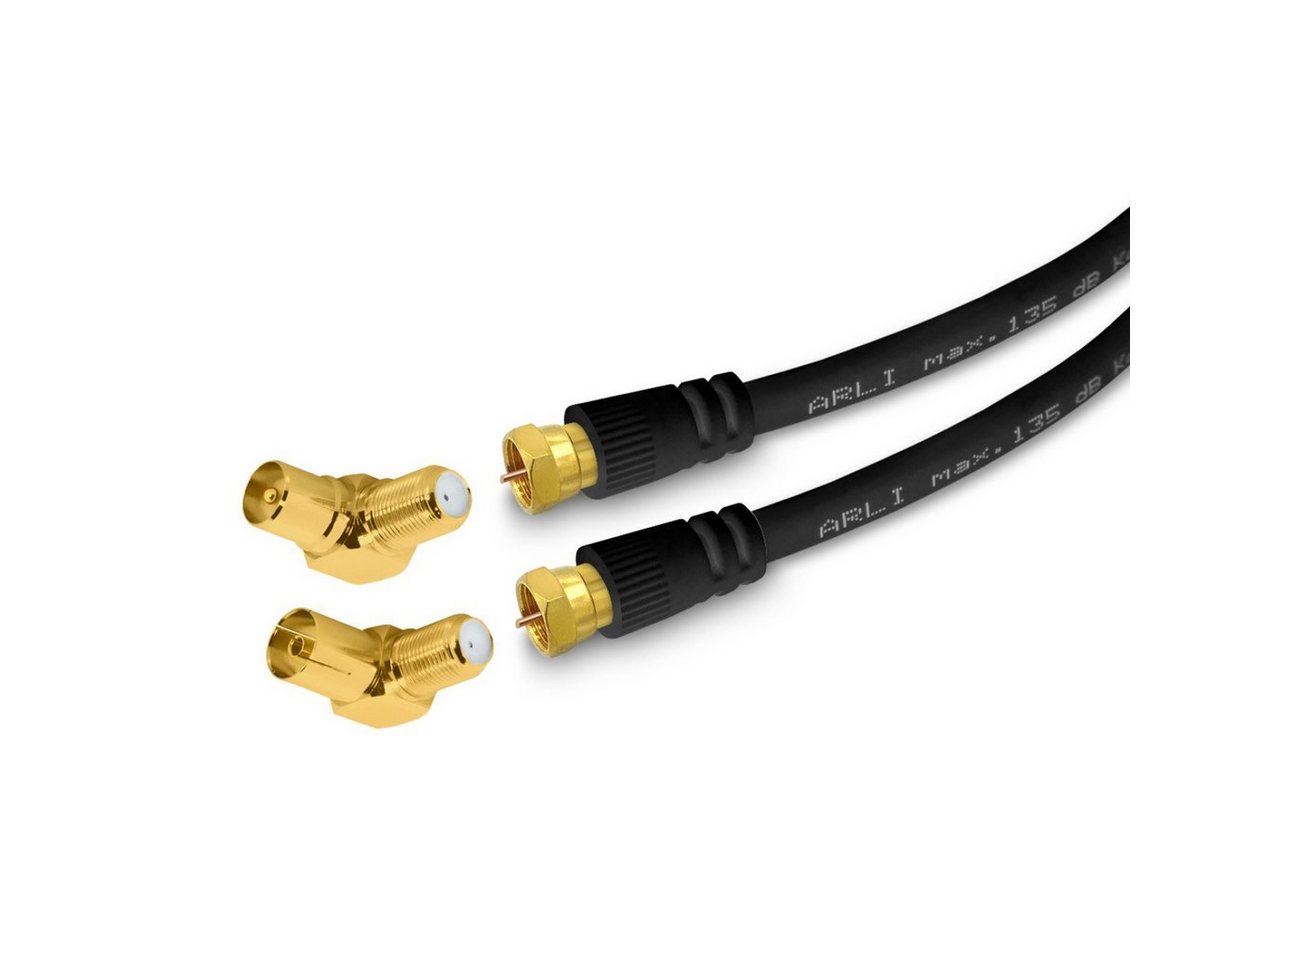 ARLI schwarz TV-Kabel, TV Antennenstecker, TV Antennenbuchse (200 cm), 2m TV Winkel Anschlusskabel HD vergoldet 135dB Adapter Kabel Digital von ARLI